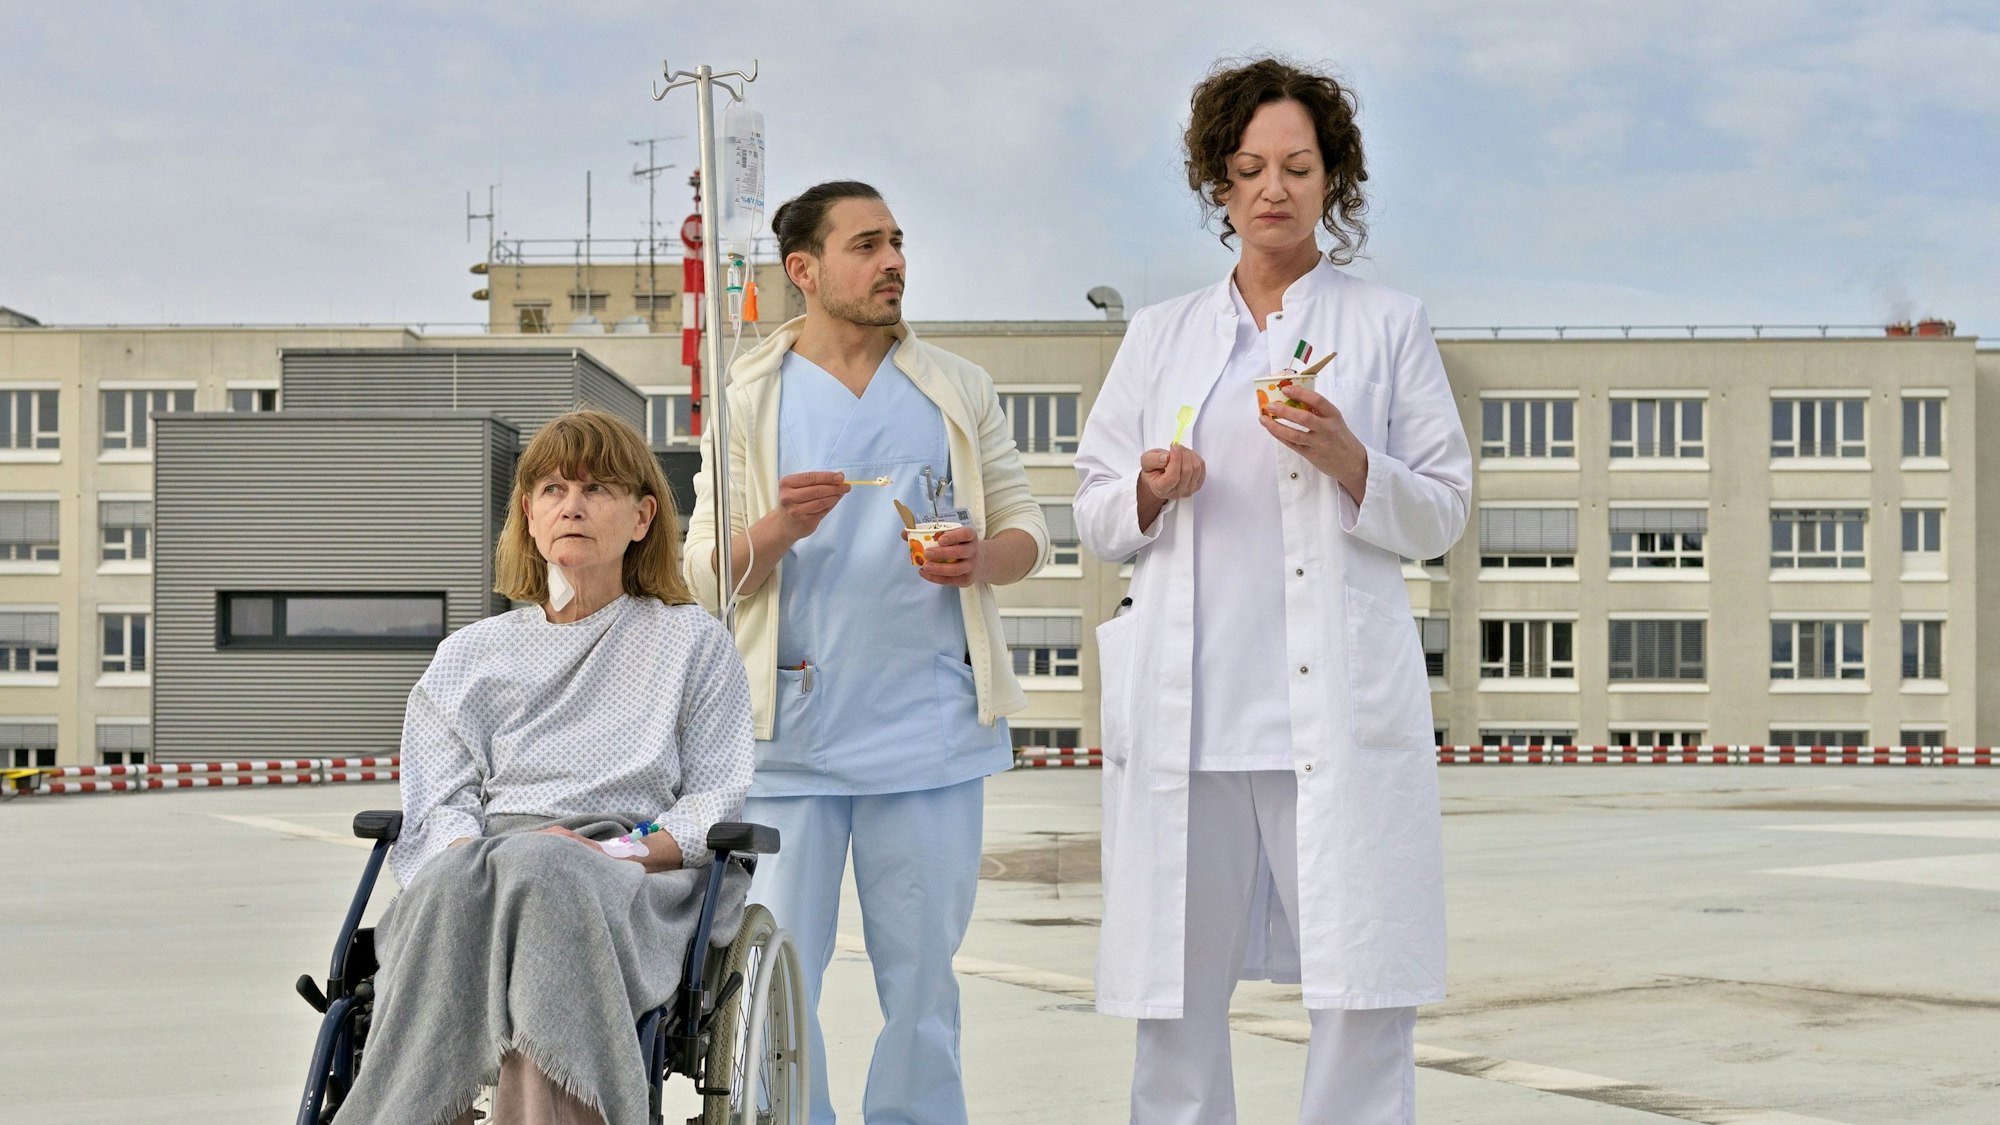 Carolin Mellau (Natalia Wörner, r) und der Pfleger Mirko (Johannes Klaußner) sind mit Madame Laurent (Ursula Andermatt) auf dem Dach der Klinik und essen Eis in einer Szene des Films „Die Welt steht still“ (undatierte Filmszene).